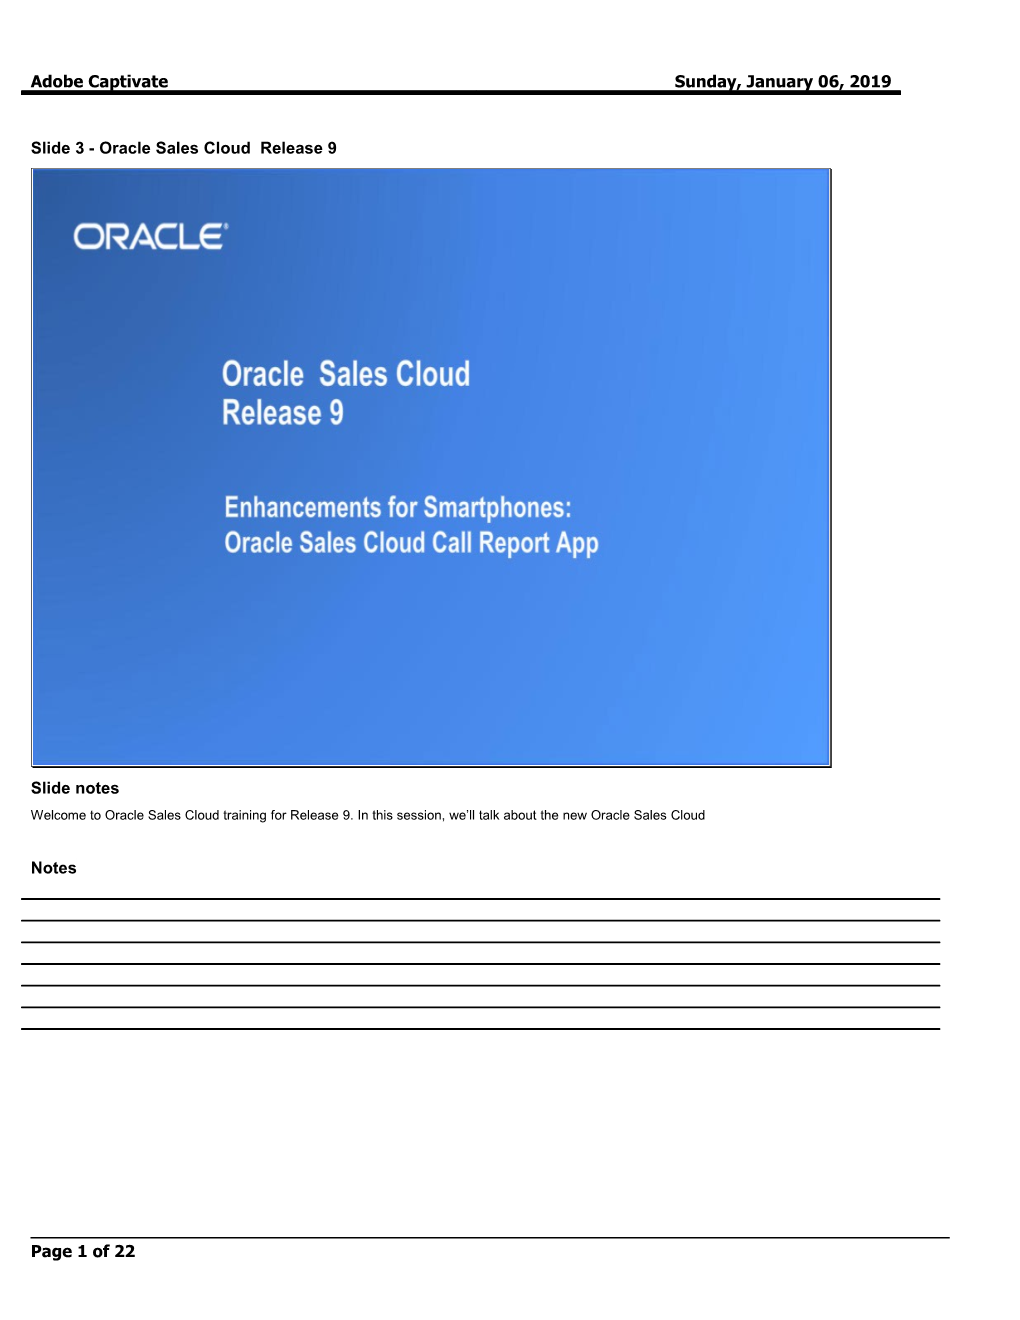 Slide 3 - Oracle Sales Cloud Release 9